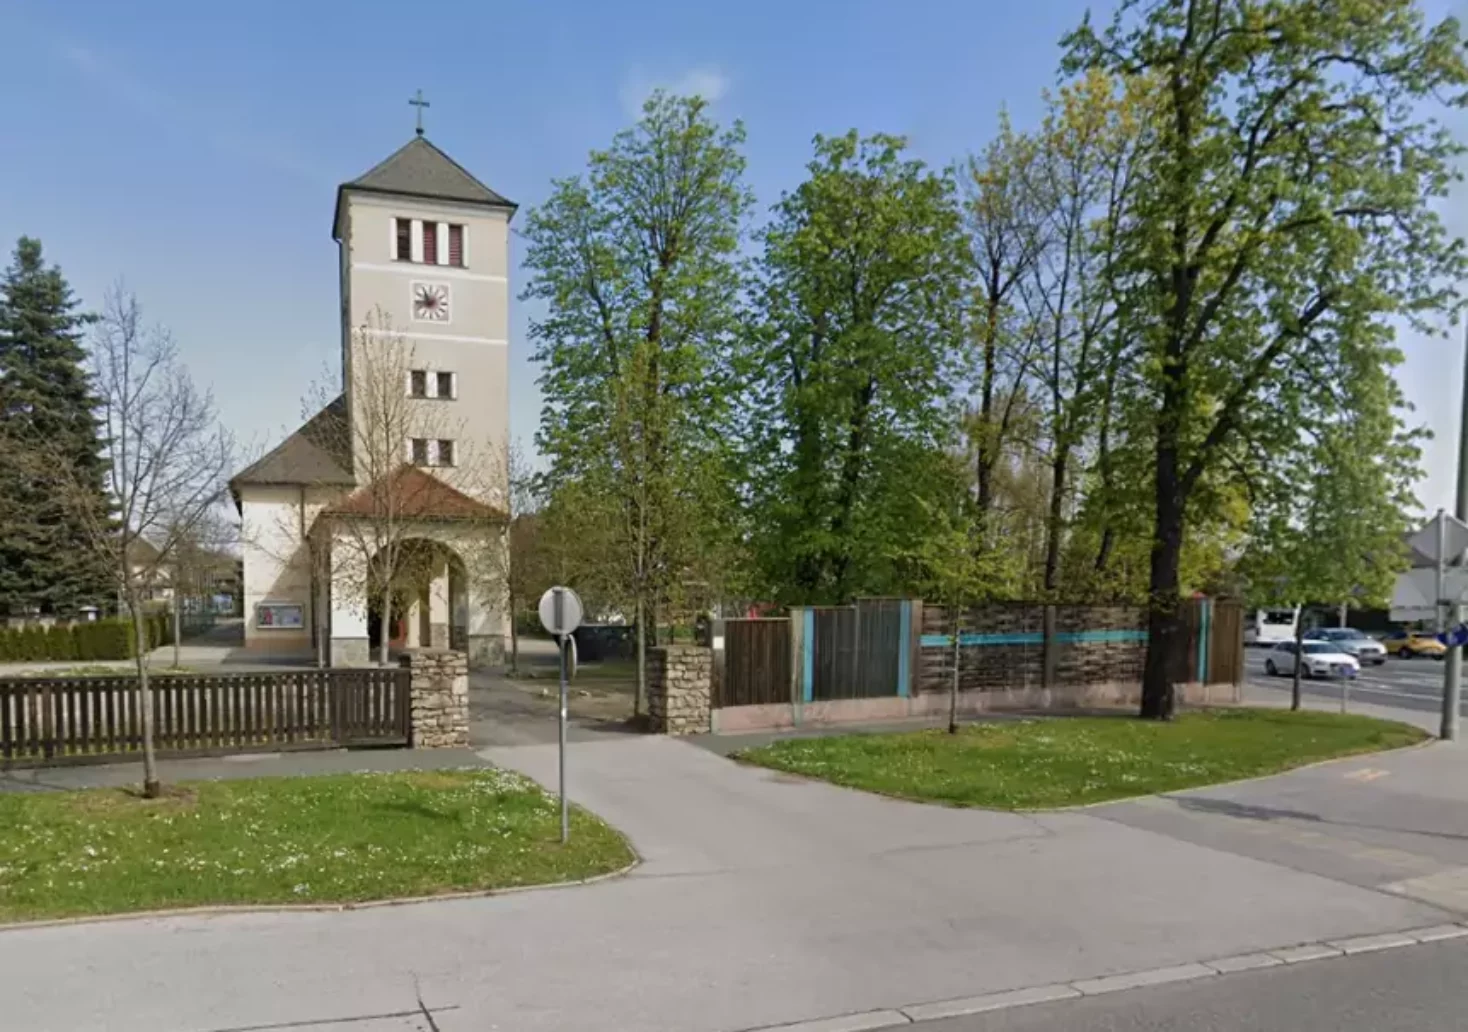 Bild auf 5min.at zeigt die Don-Bosco-Kirche in Graz.